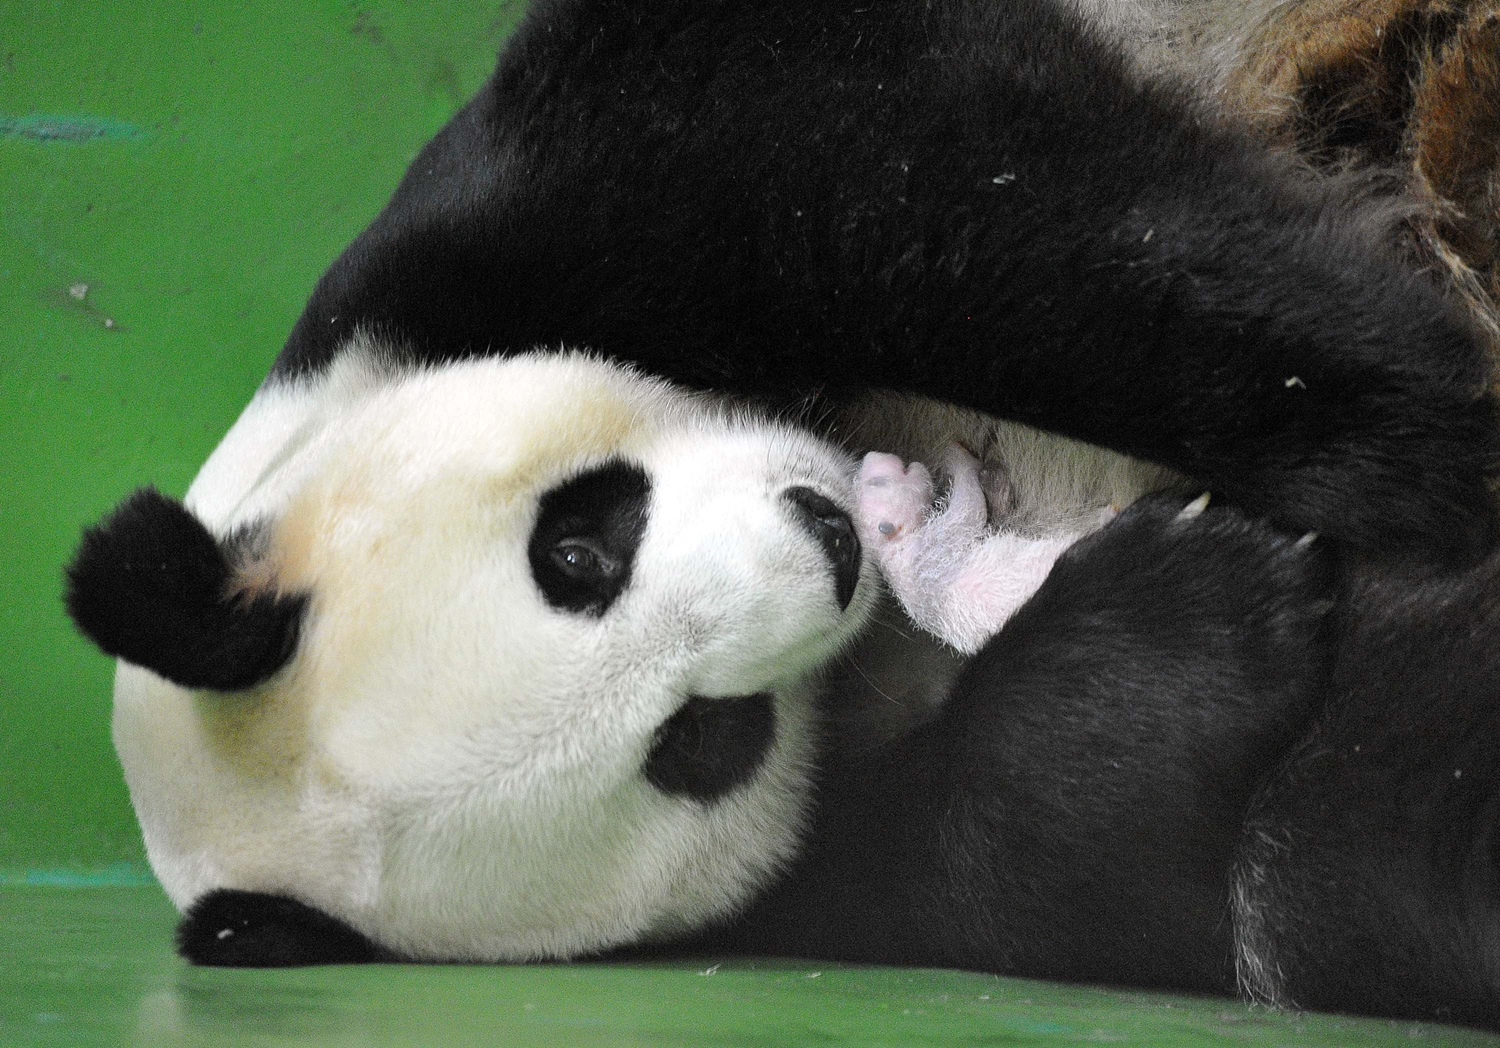 Aug. 10, 2014. Giant panda "Ju Xiao" holds a panda cub in her arms in Guangzhou, Guangdong Province, China.